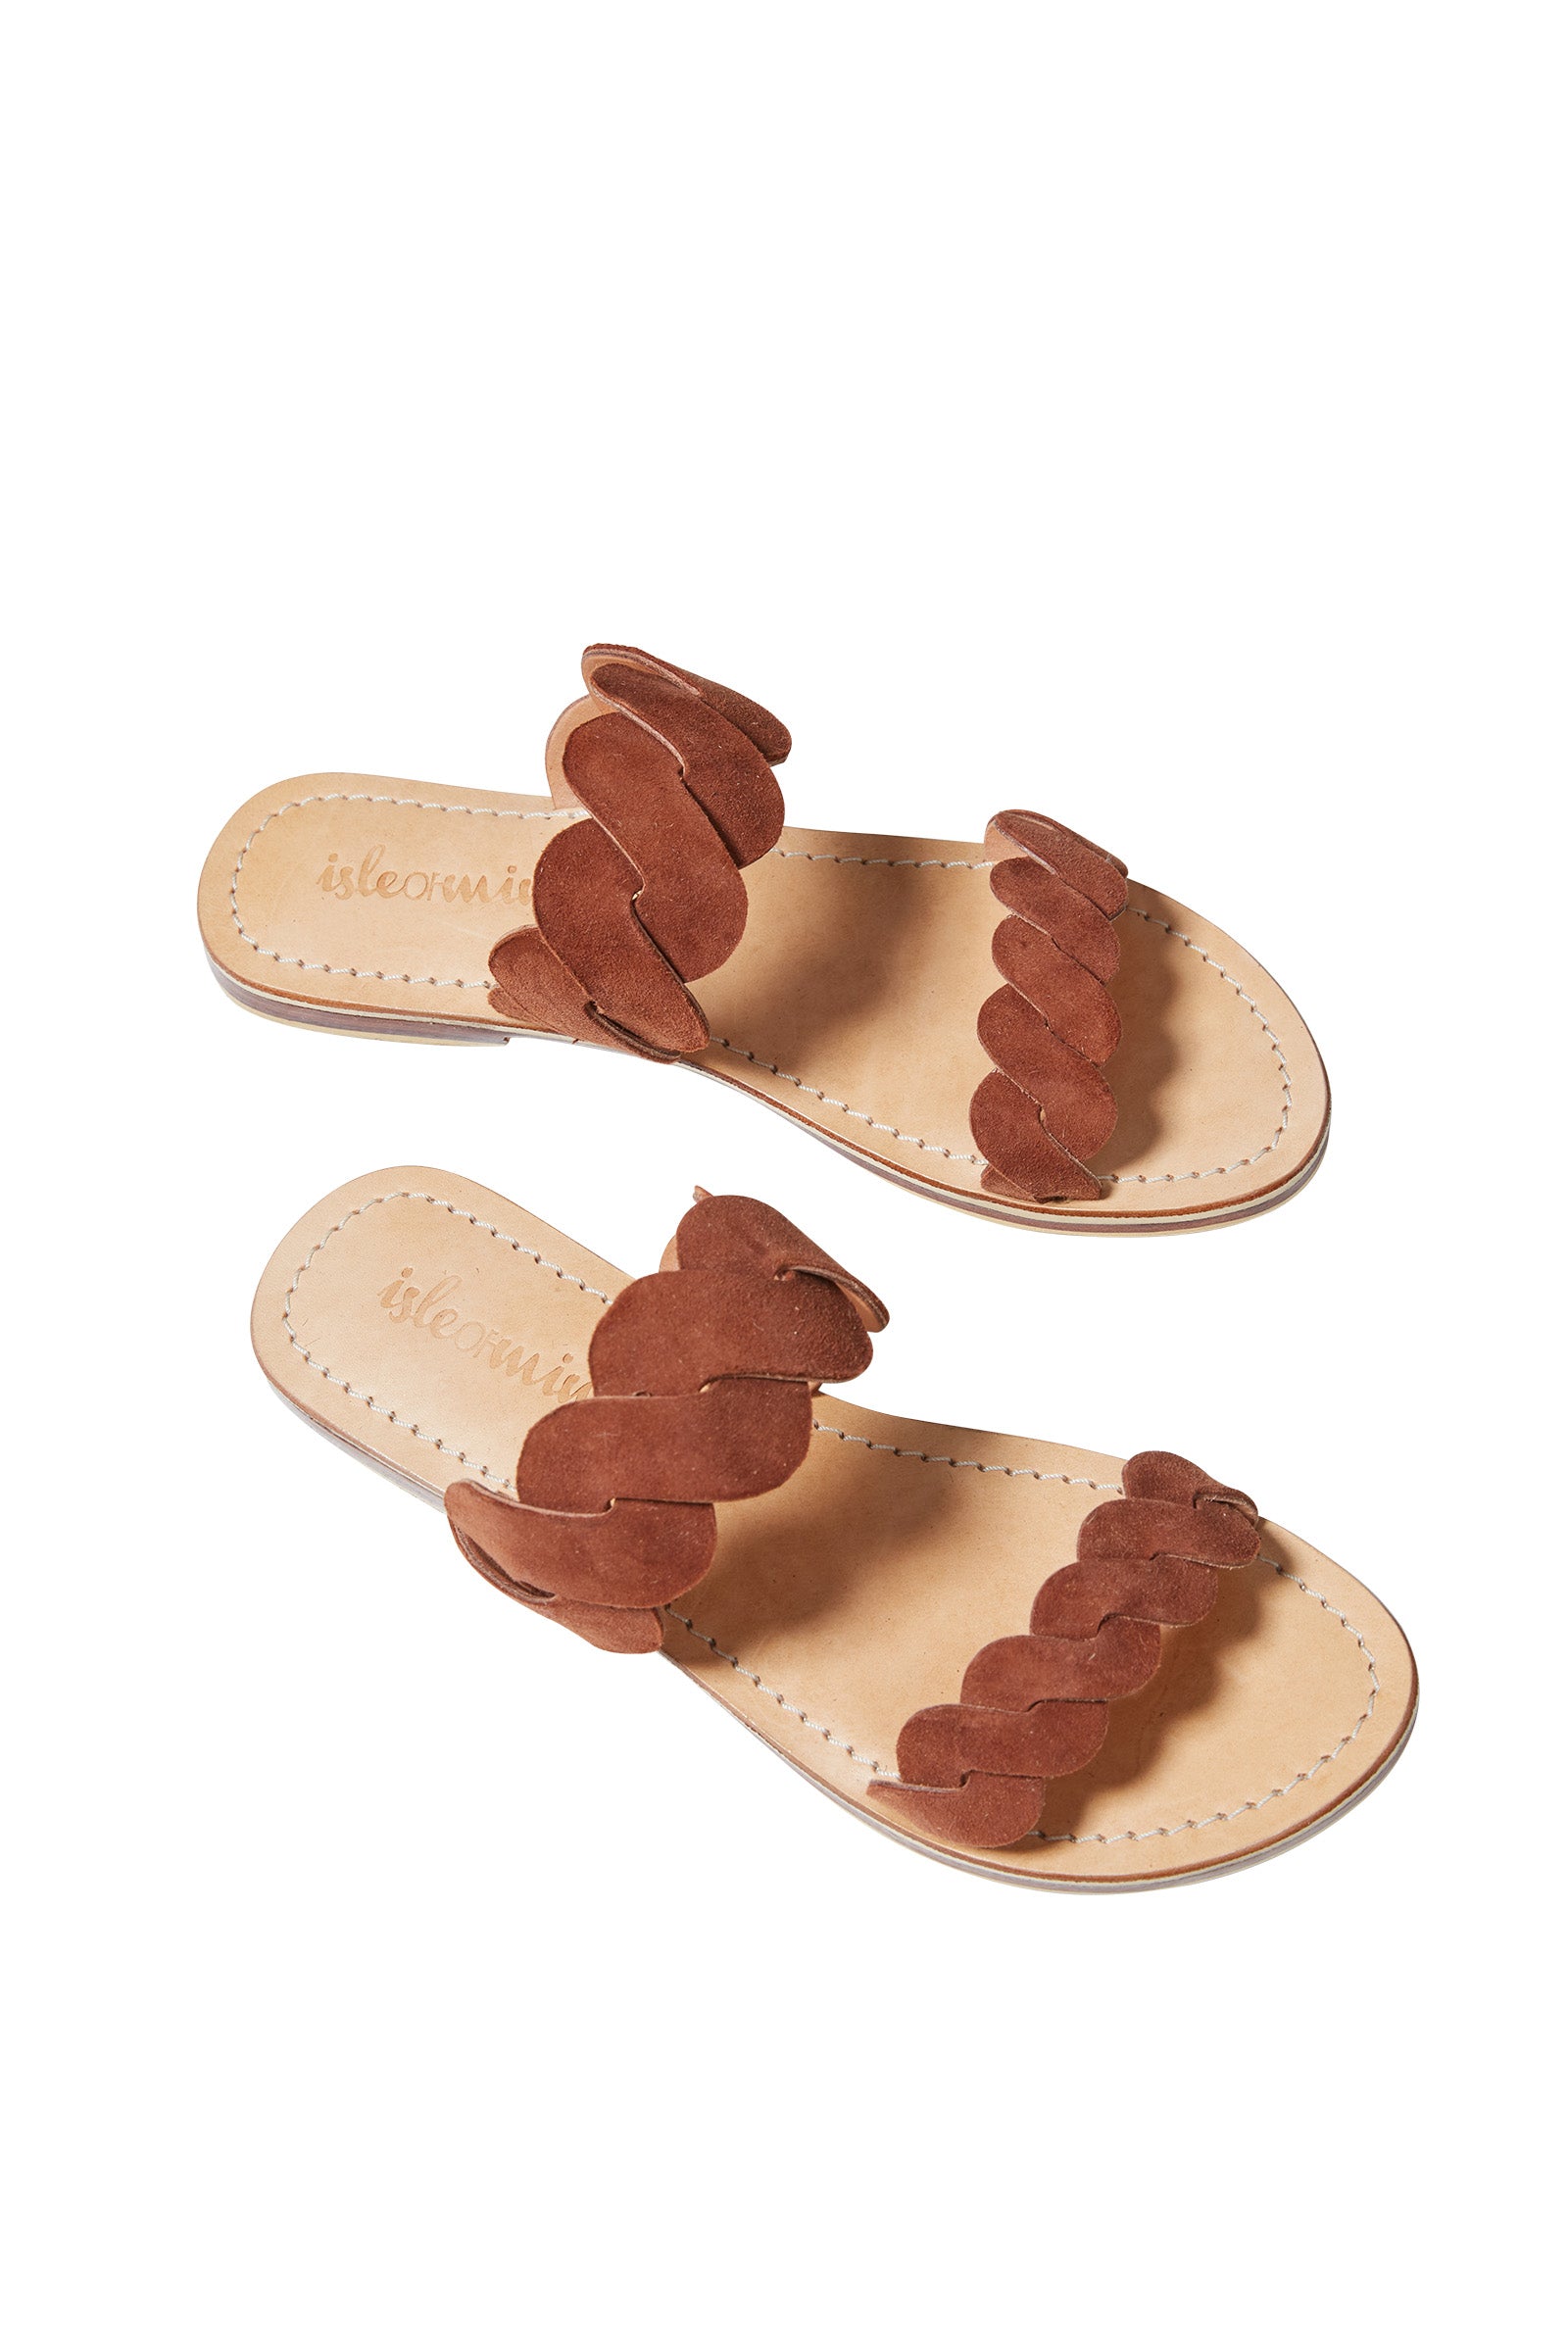 Pala Slide - Tan - Isle of Mine Footwear - Sandals